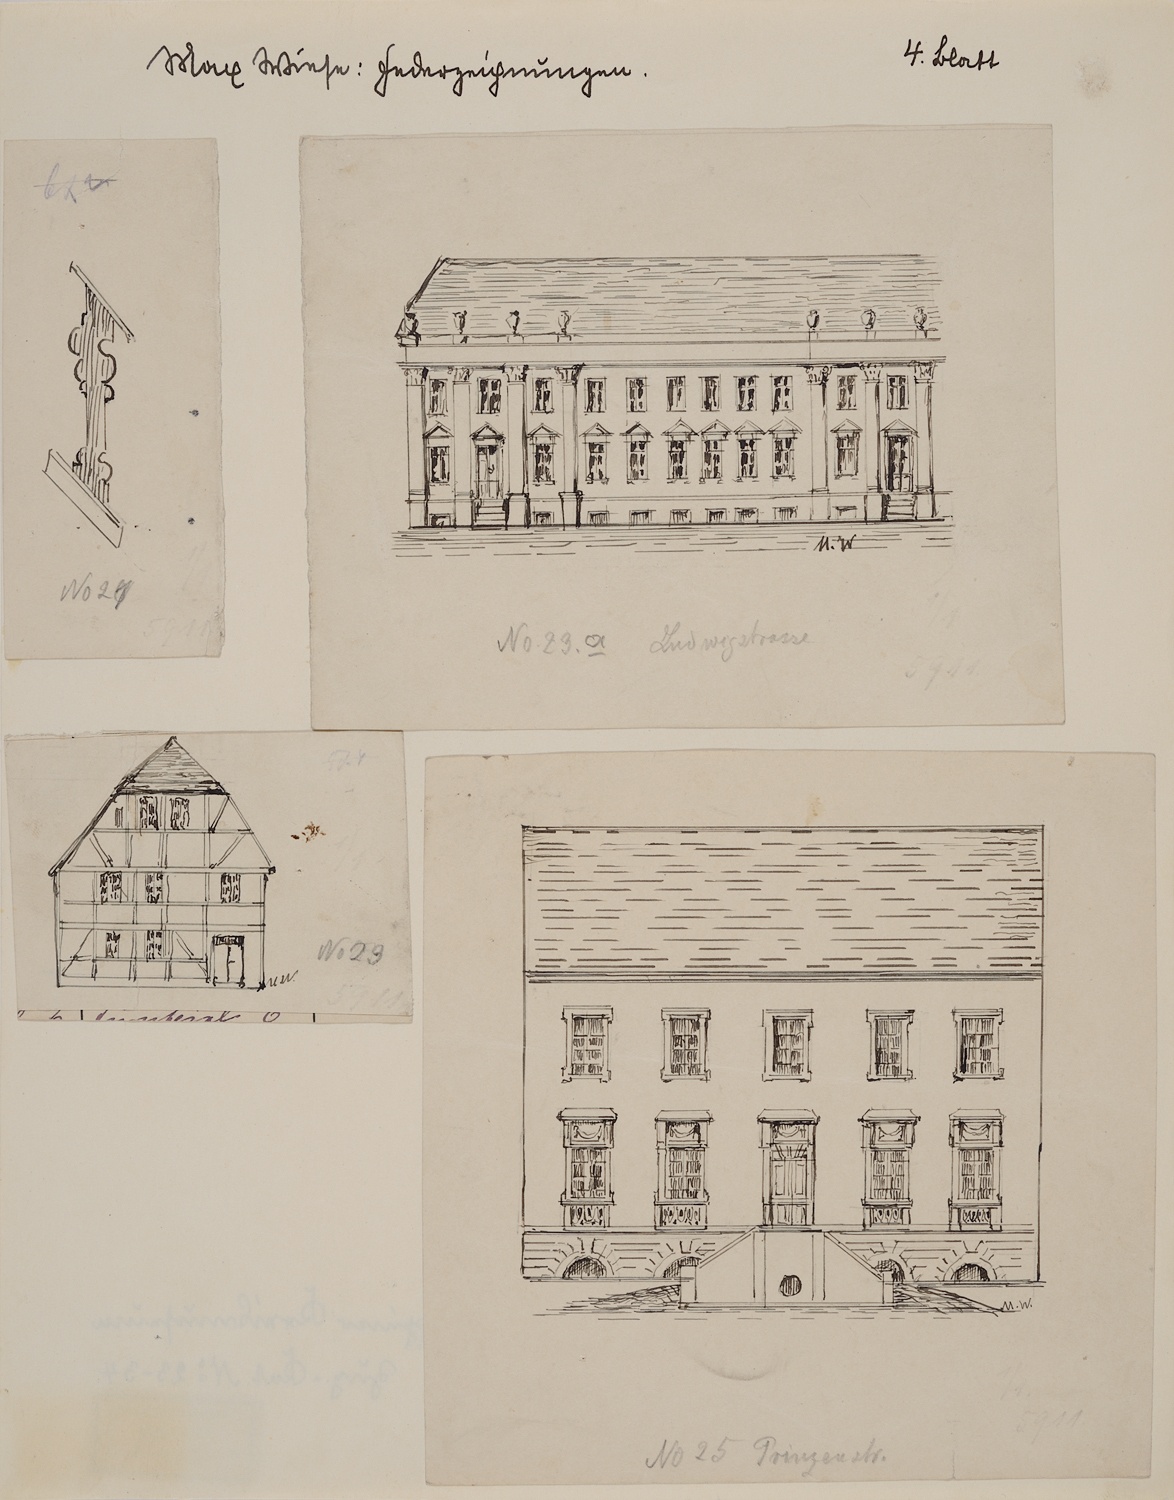 4 Federzeichnungen zu „Neuruppin und seine Bauten“, Bl. 4, Nr. 21, 23, 23a, 25 (Museum Neuruppin RR-F)